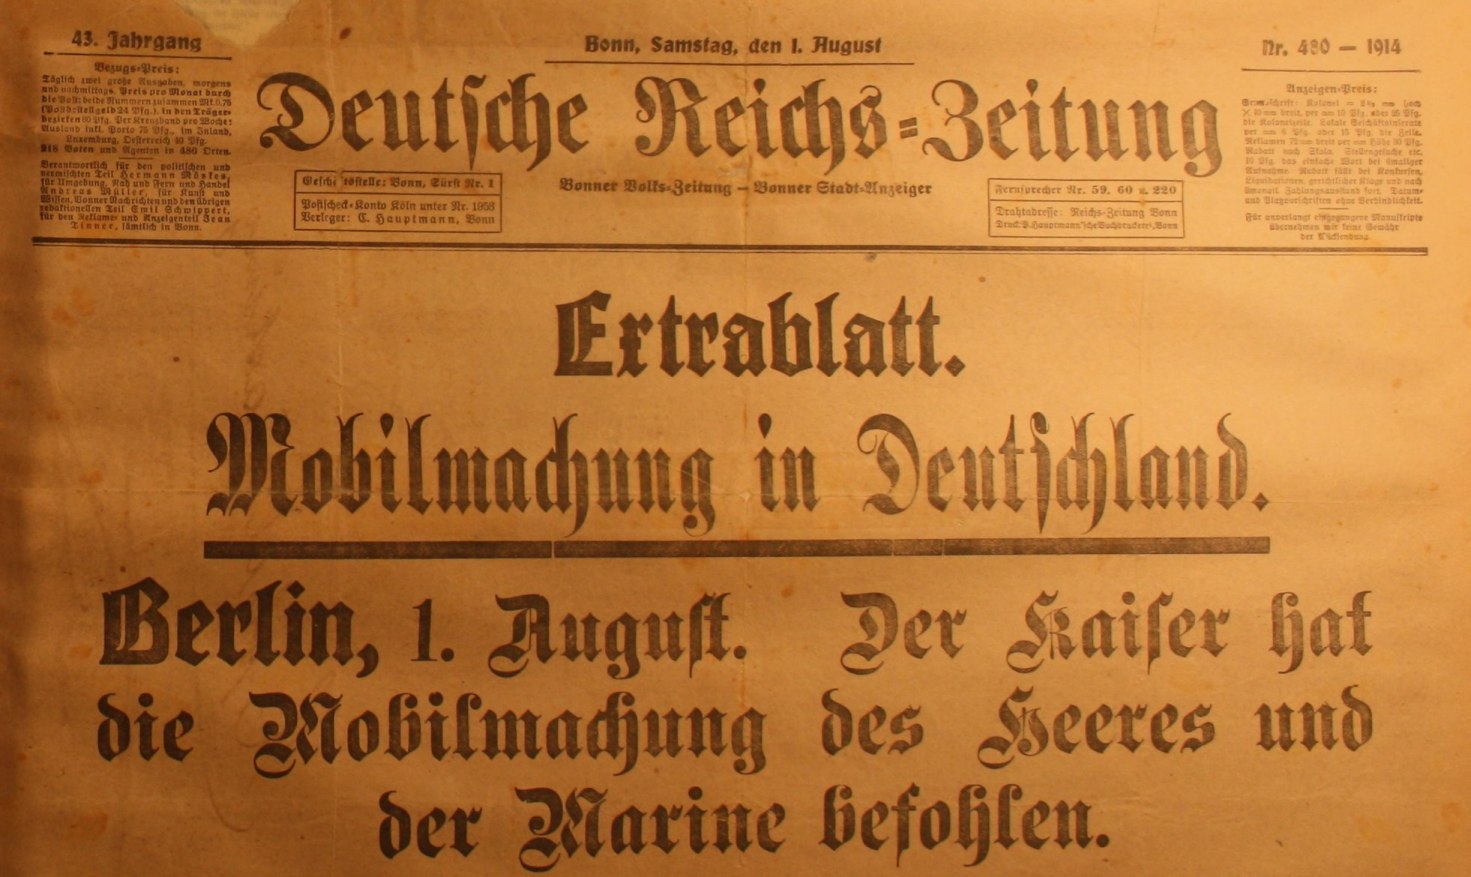 Extrablatt der Deutschen Reichs-Zeitung vom 1. August 1914